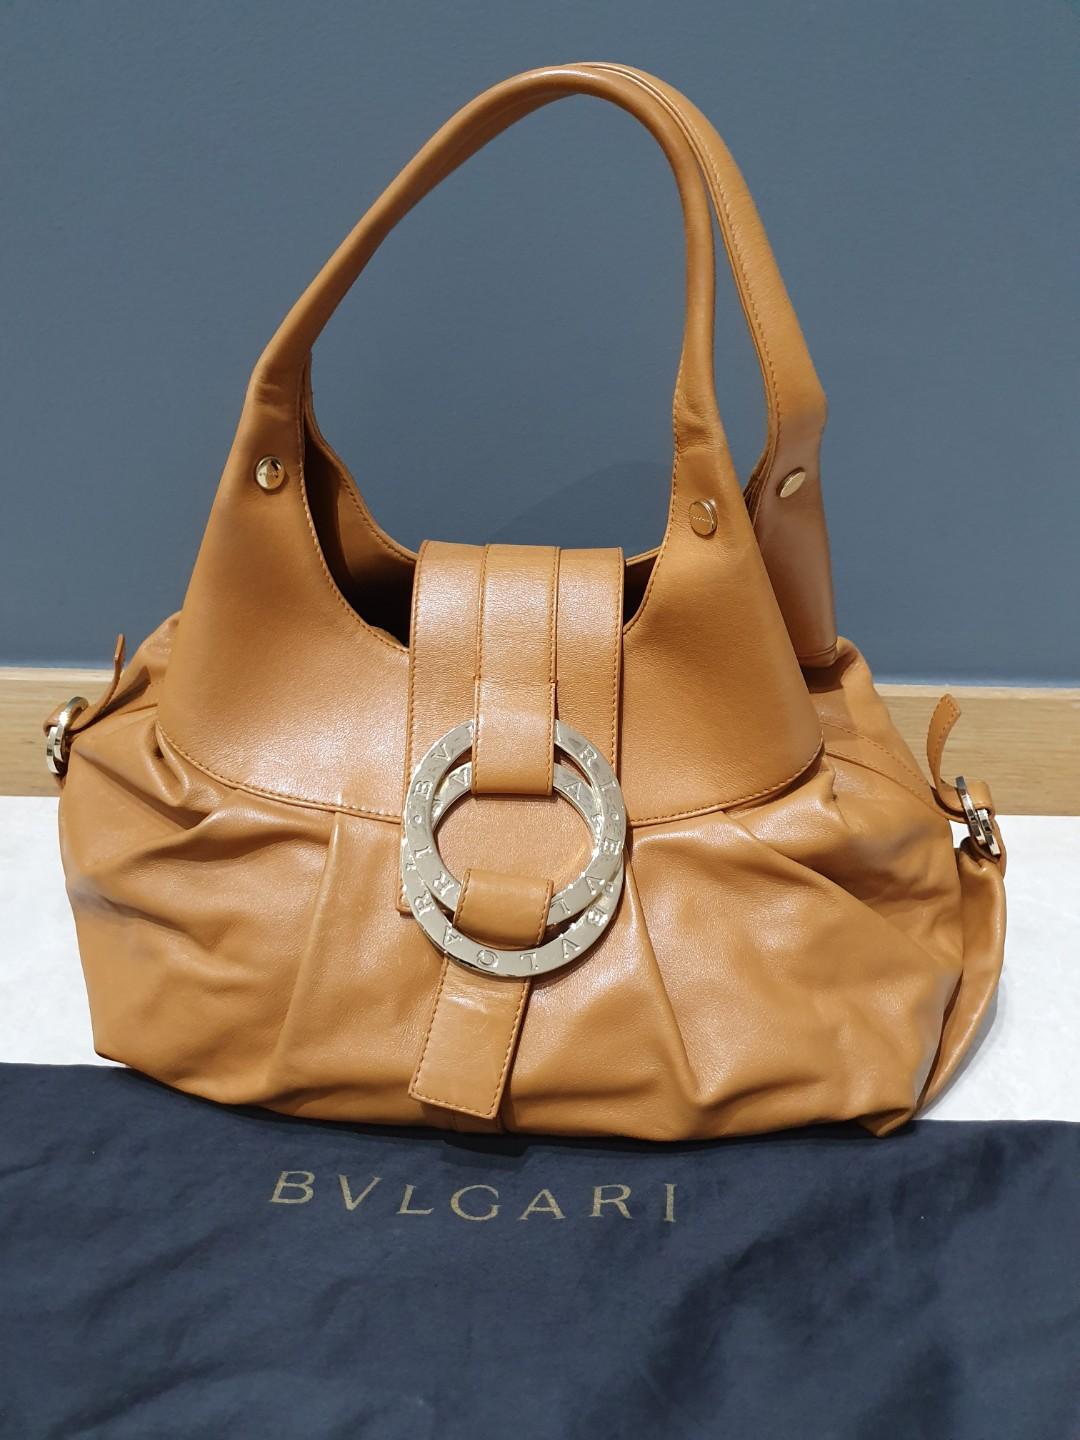 bulgari chandra handbag